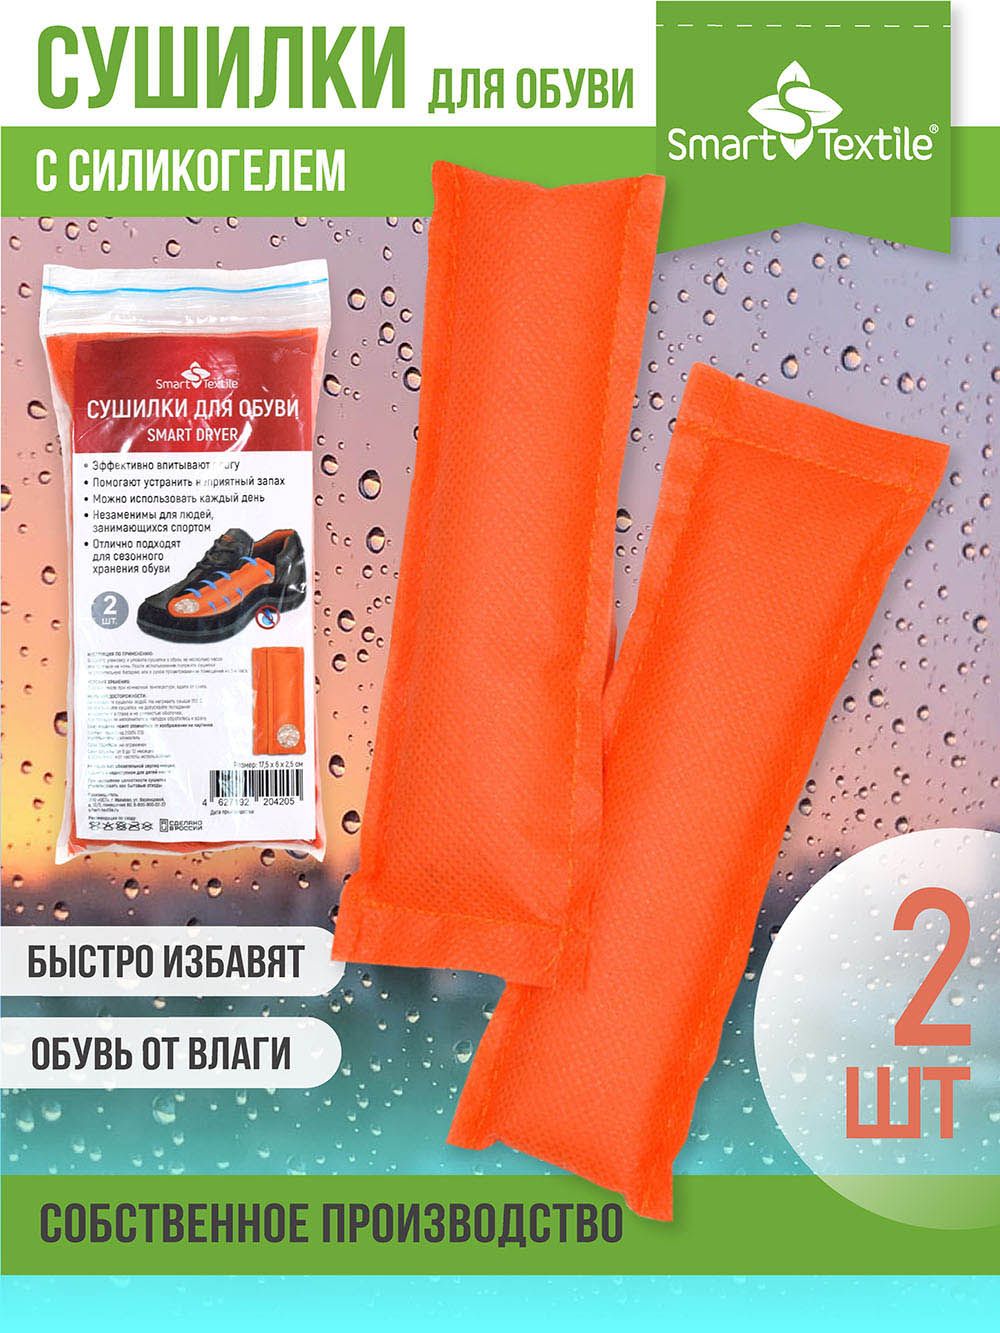 Комплект сушилок для обуви Smart Dryer - оранжевый